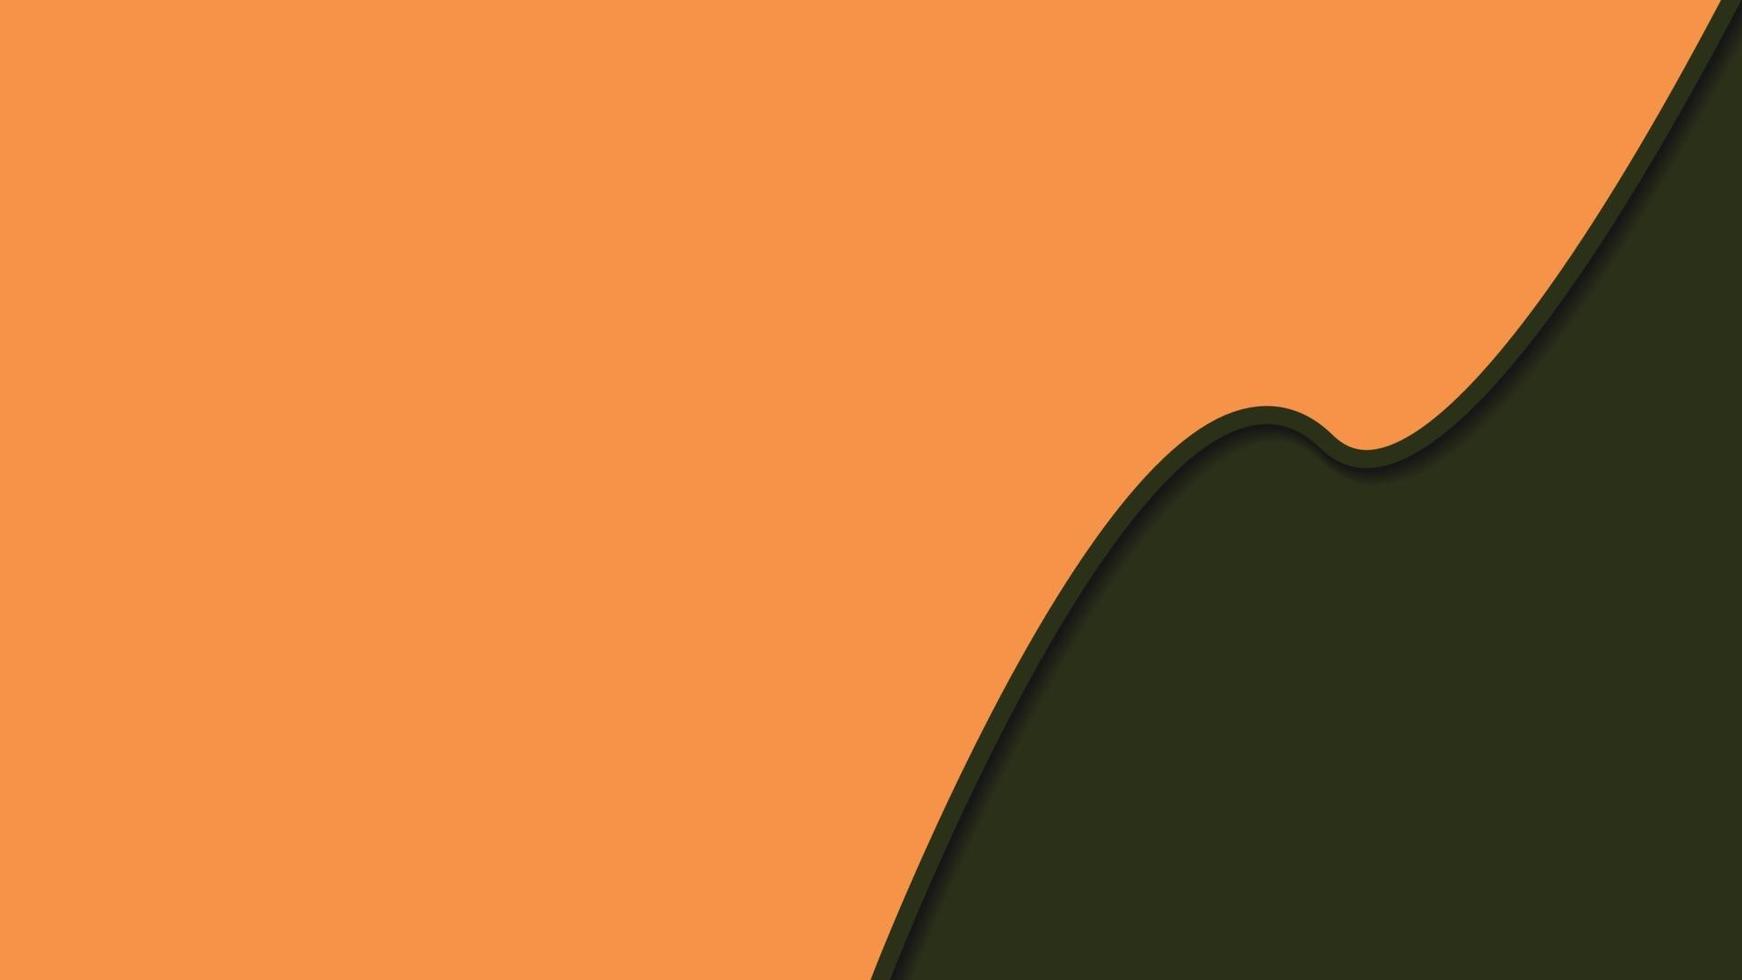 Leerzeichenhintergrund mit orange und grüner Armeefarbe freier Vektor